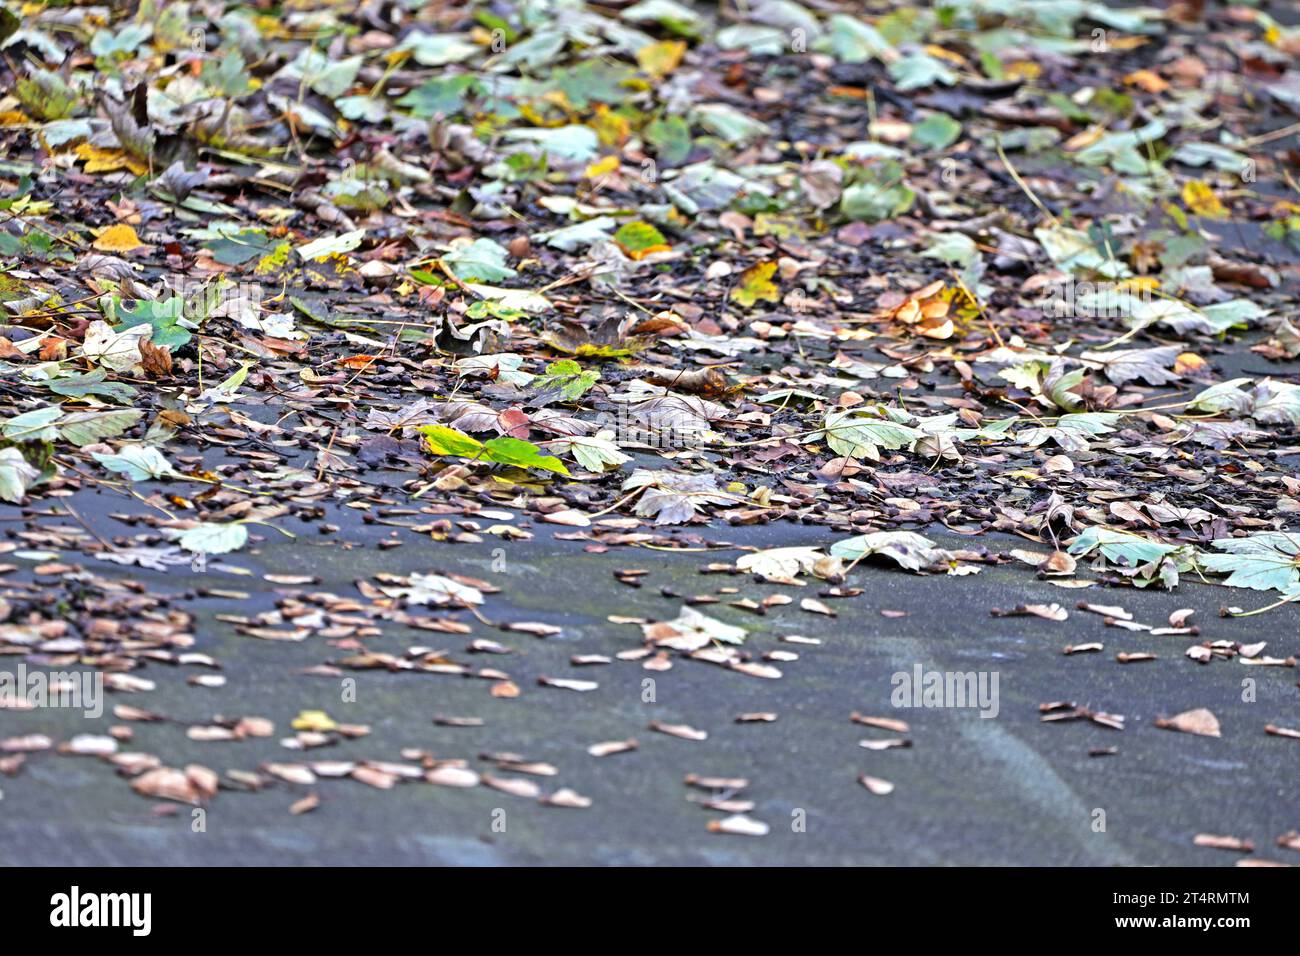 Laubfall im Herbst Ahornaub liegt zur Herbstzeit auf einem Flachdach *** le foglie cadenti in foglie d'acero autunnale giacciono su un tetto piatto in autunno credito: Imago/Alamy Live News Foto Stock